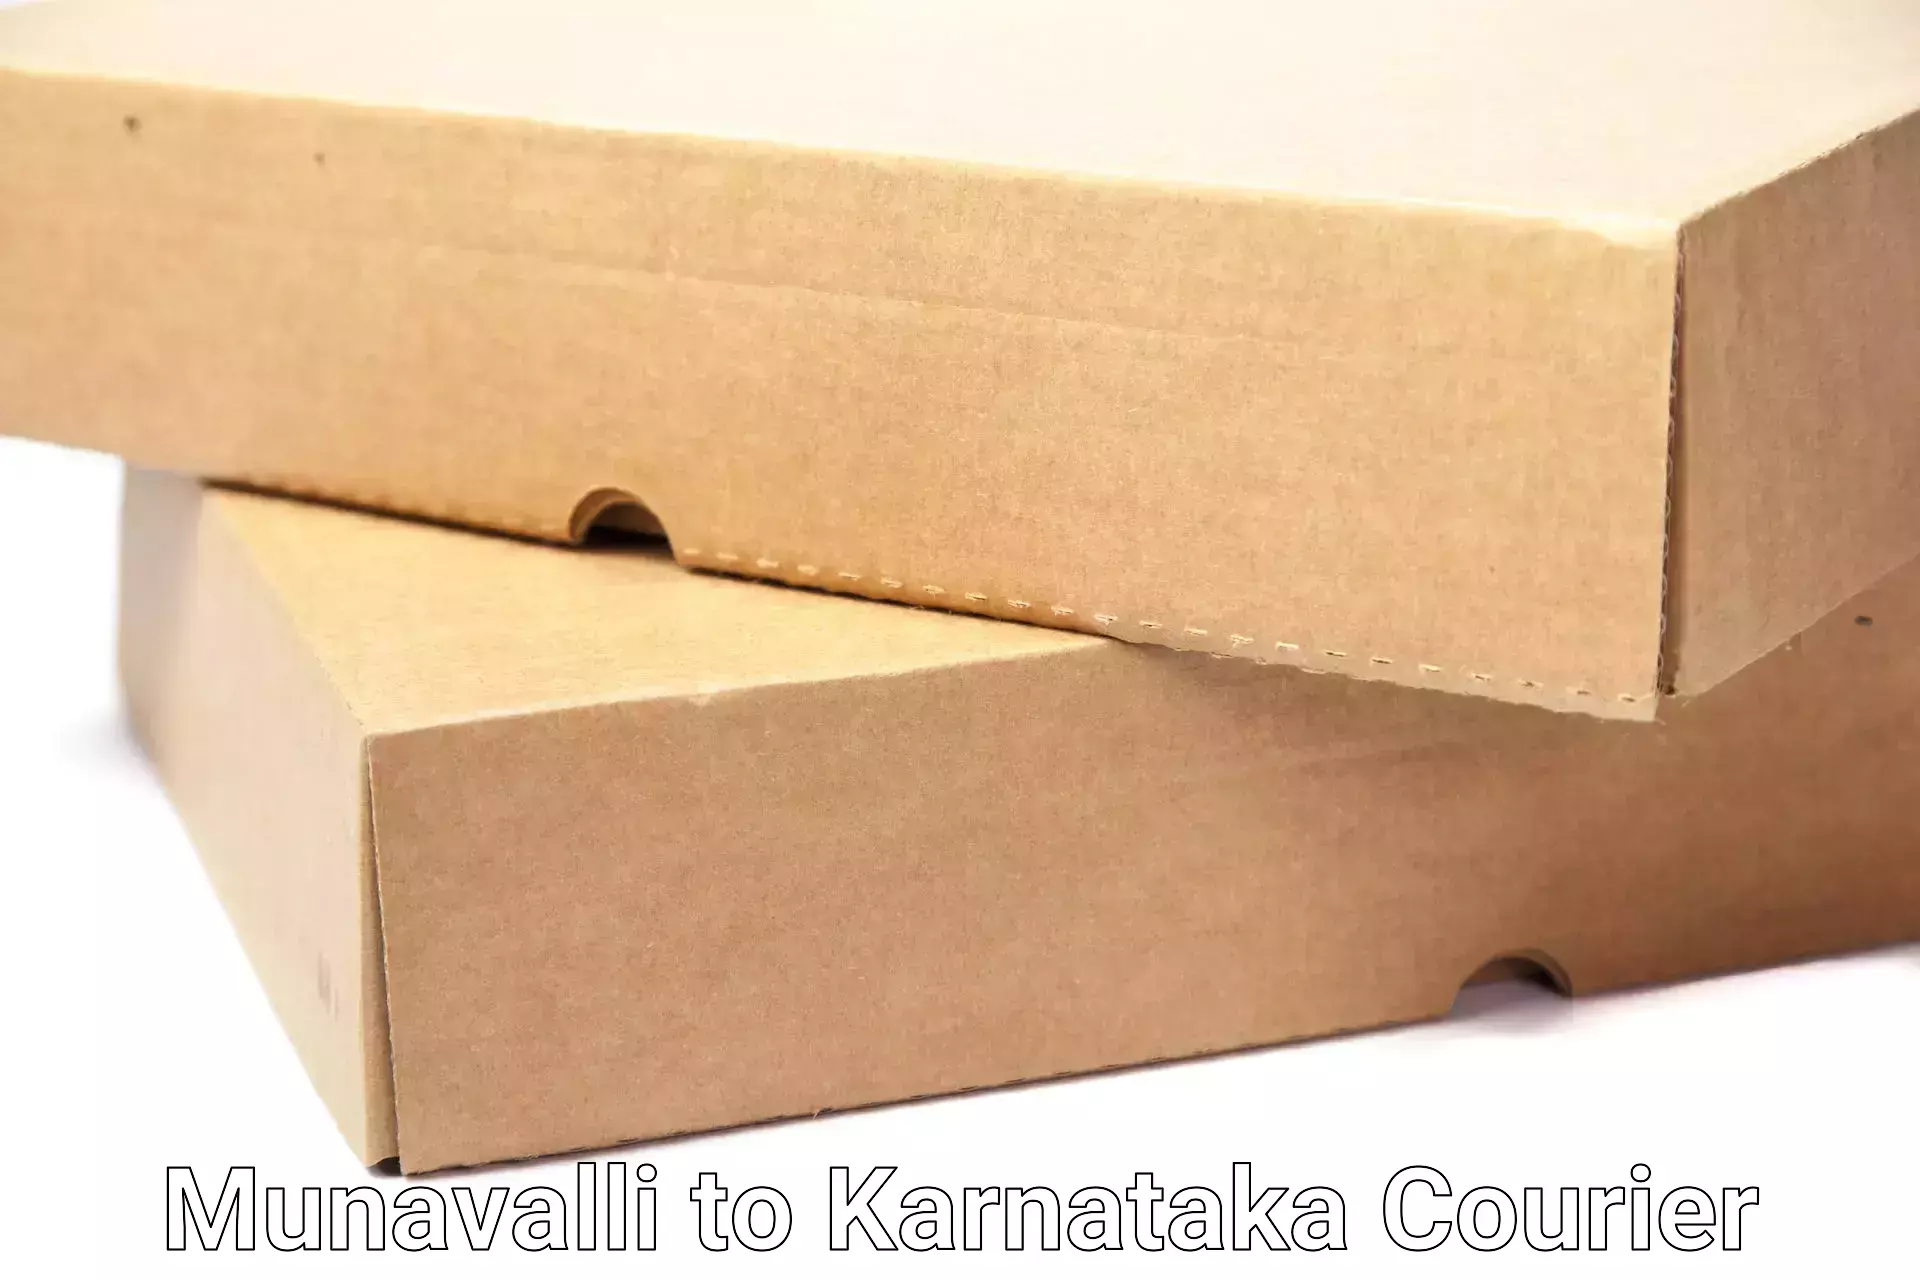 Home goods moving company in Munavalli to Karnataka